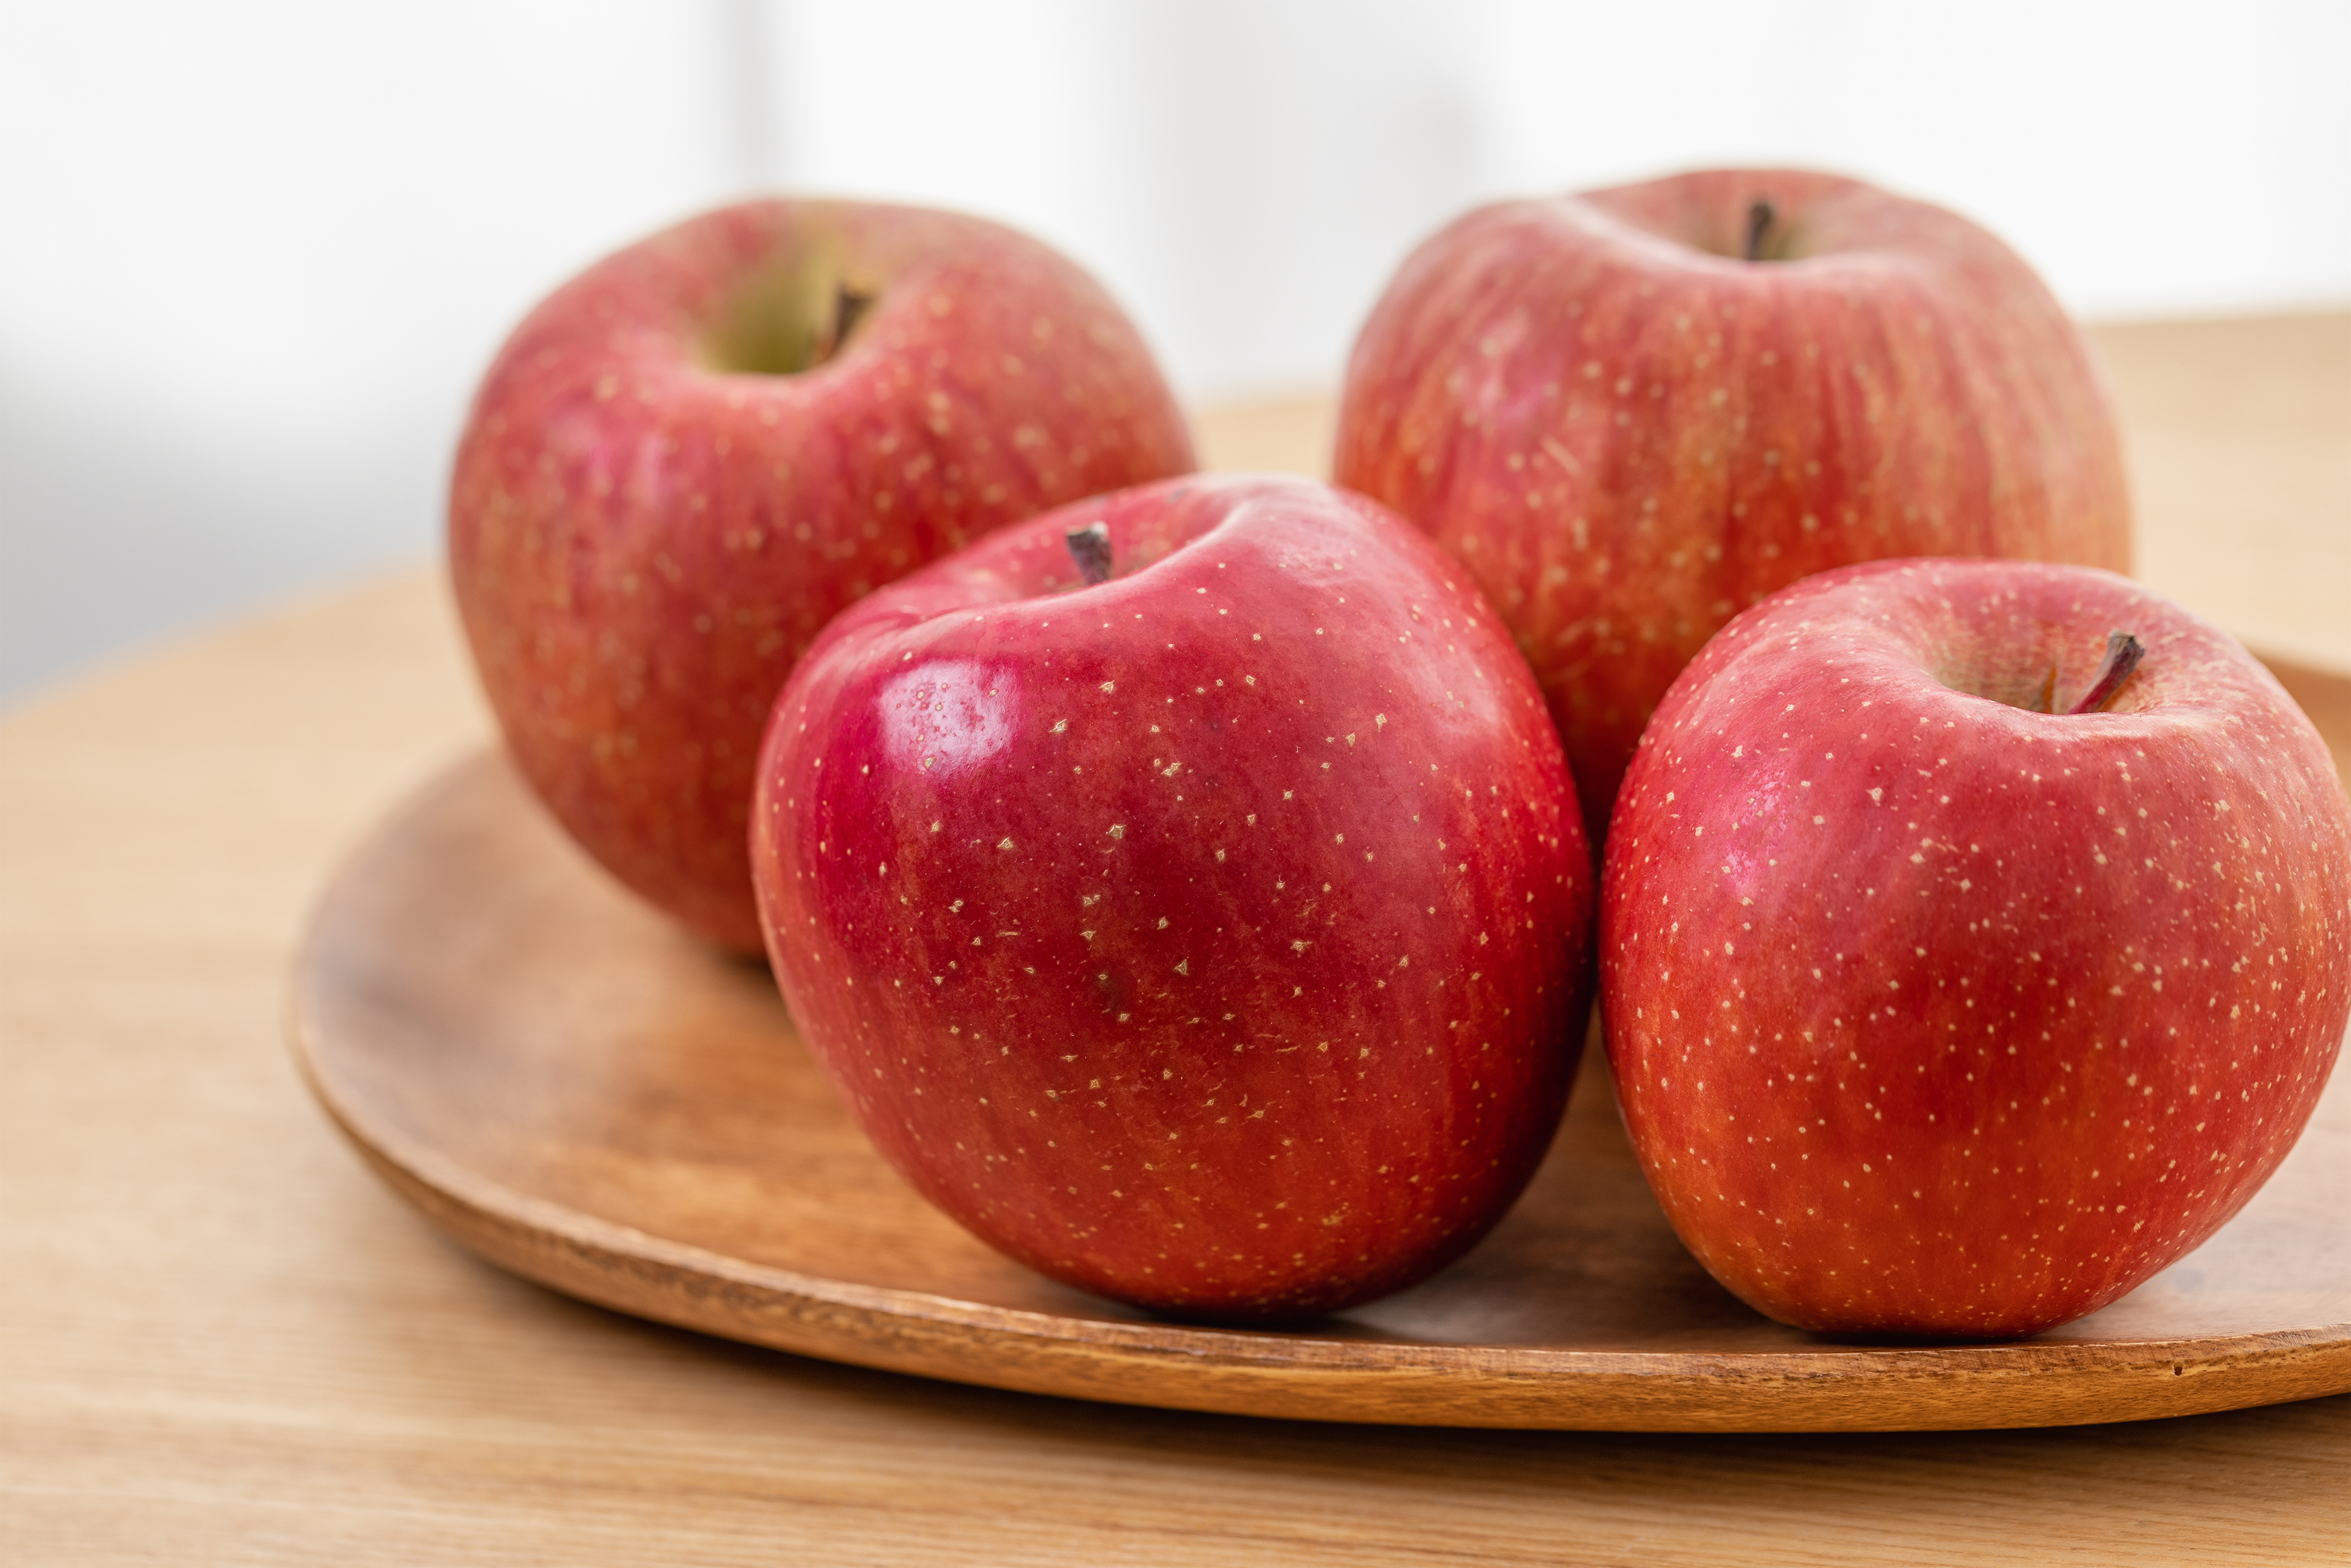 リンゴ 林檎 木のお皿 無料の高画質フリー写真素材 イメージズラボ